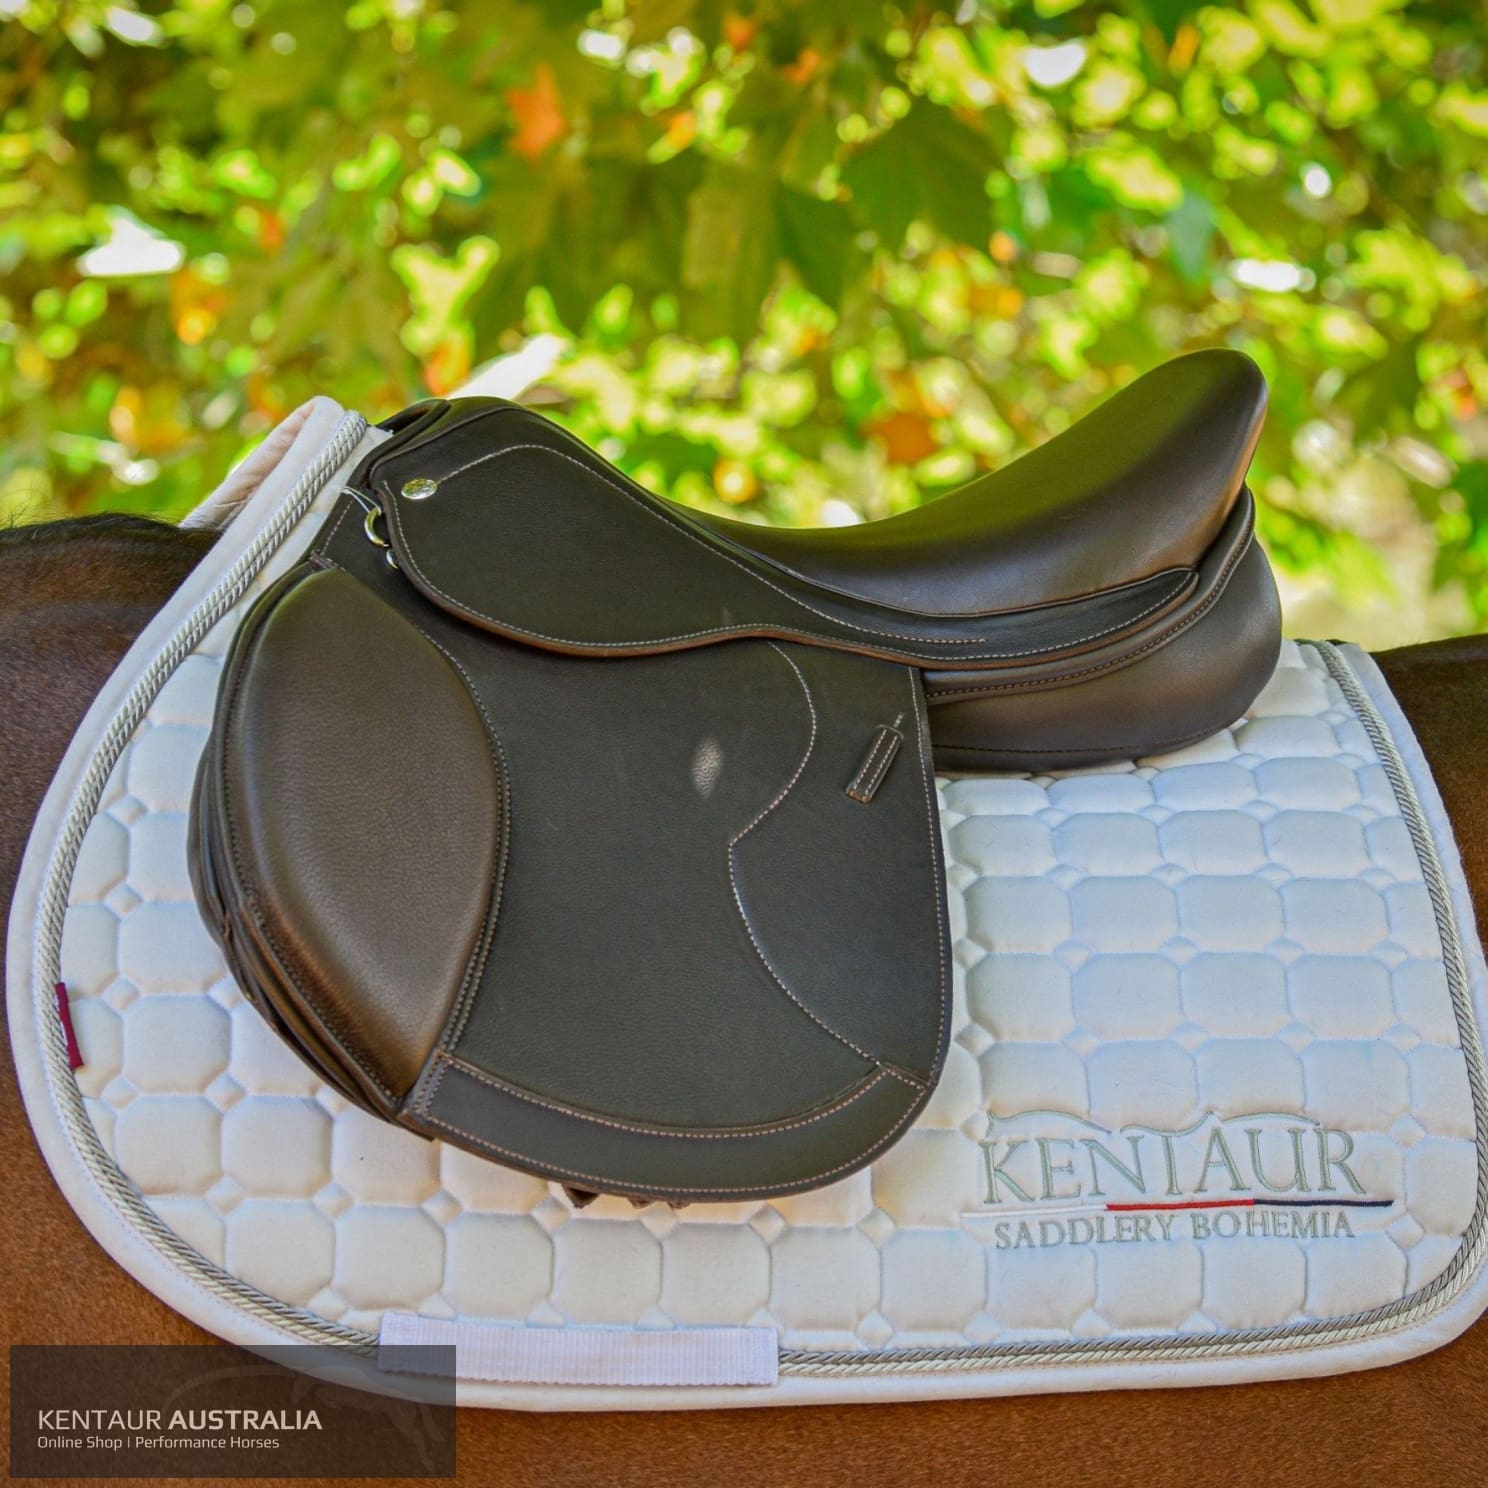 Kentaur ‘Naxos’ Jumping Saddle Jumping Saddles